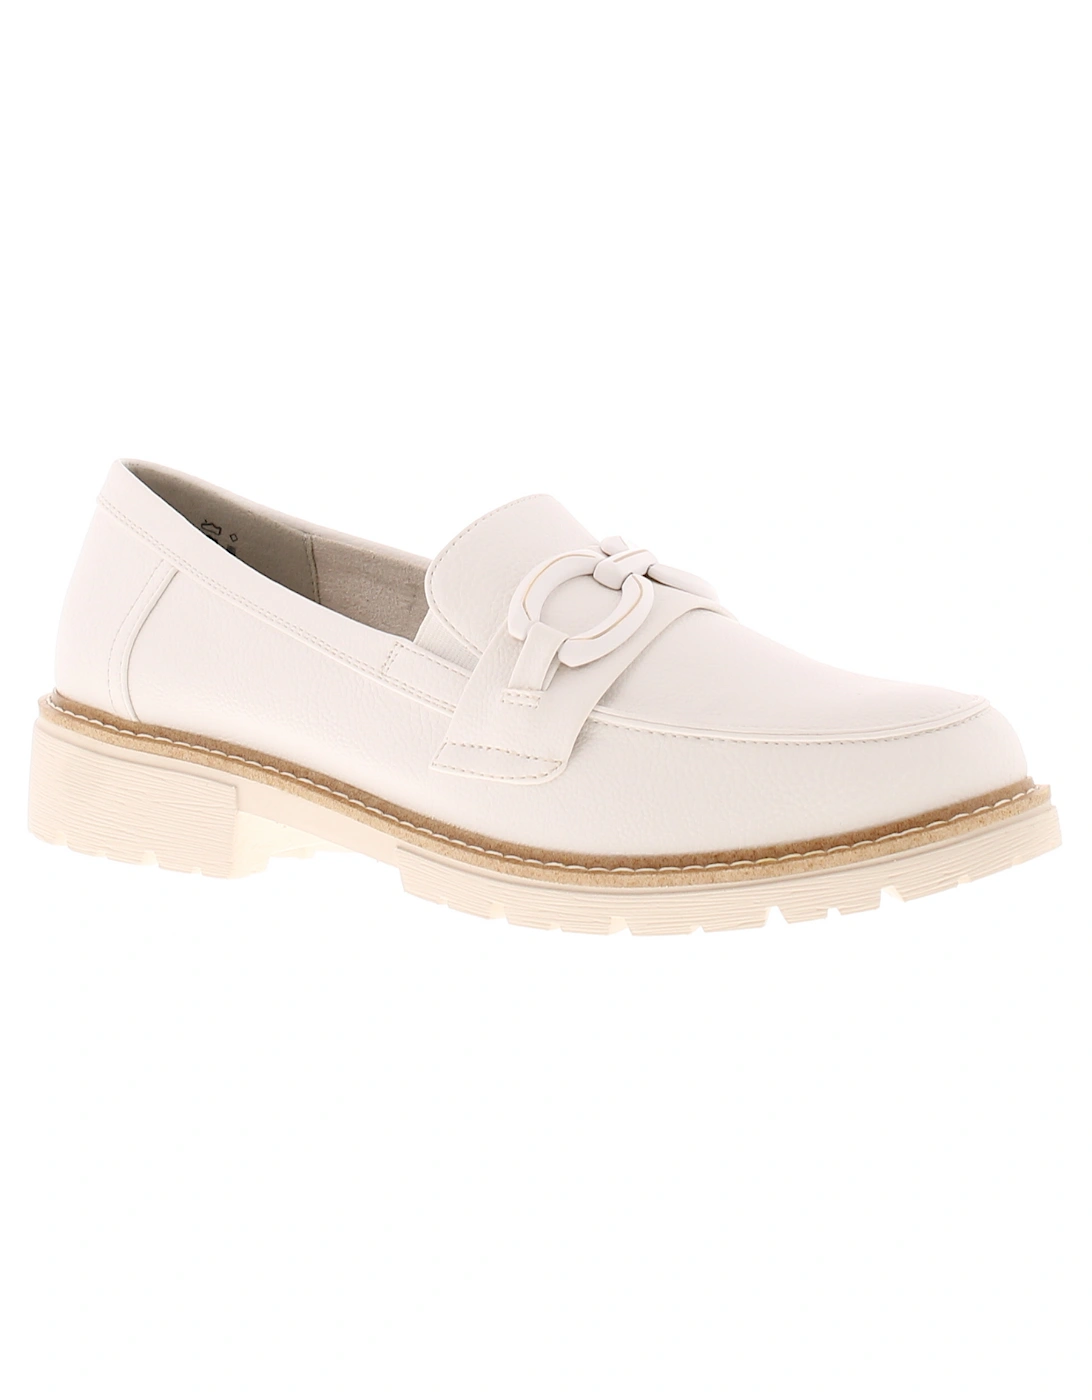 Womens Loafer Shoes Jorja Slip On white UK Size, 6 of 5